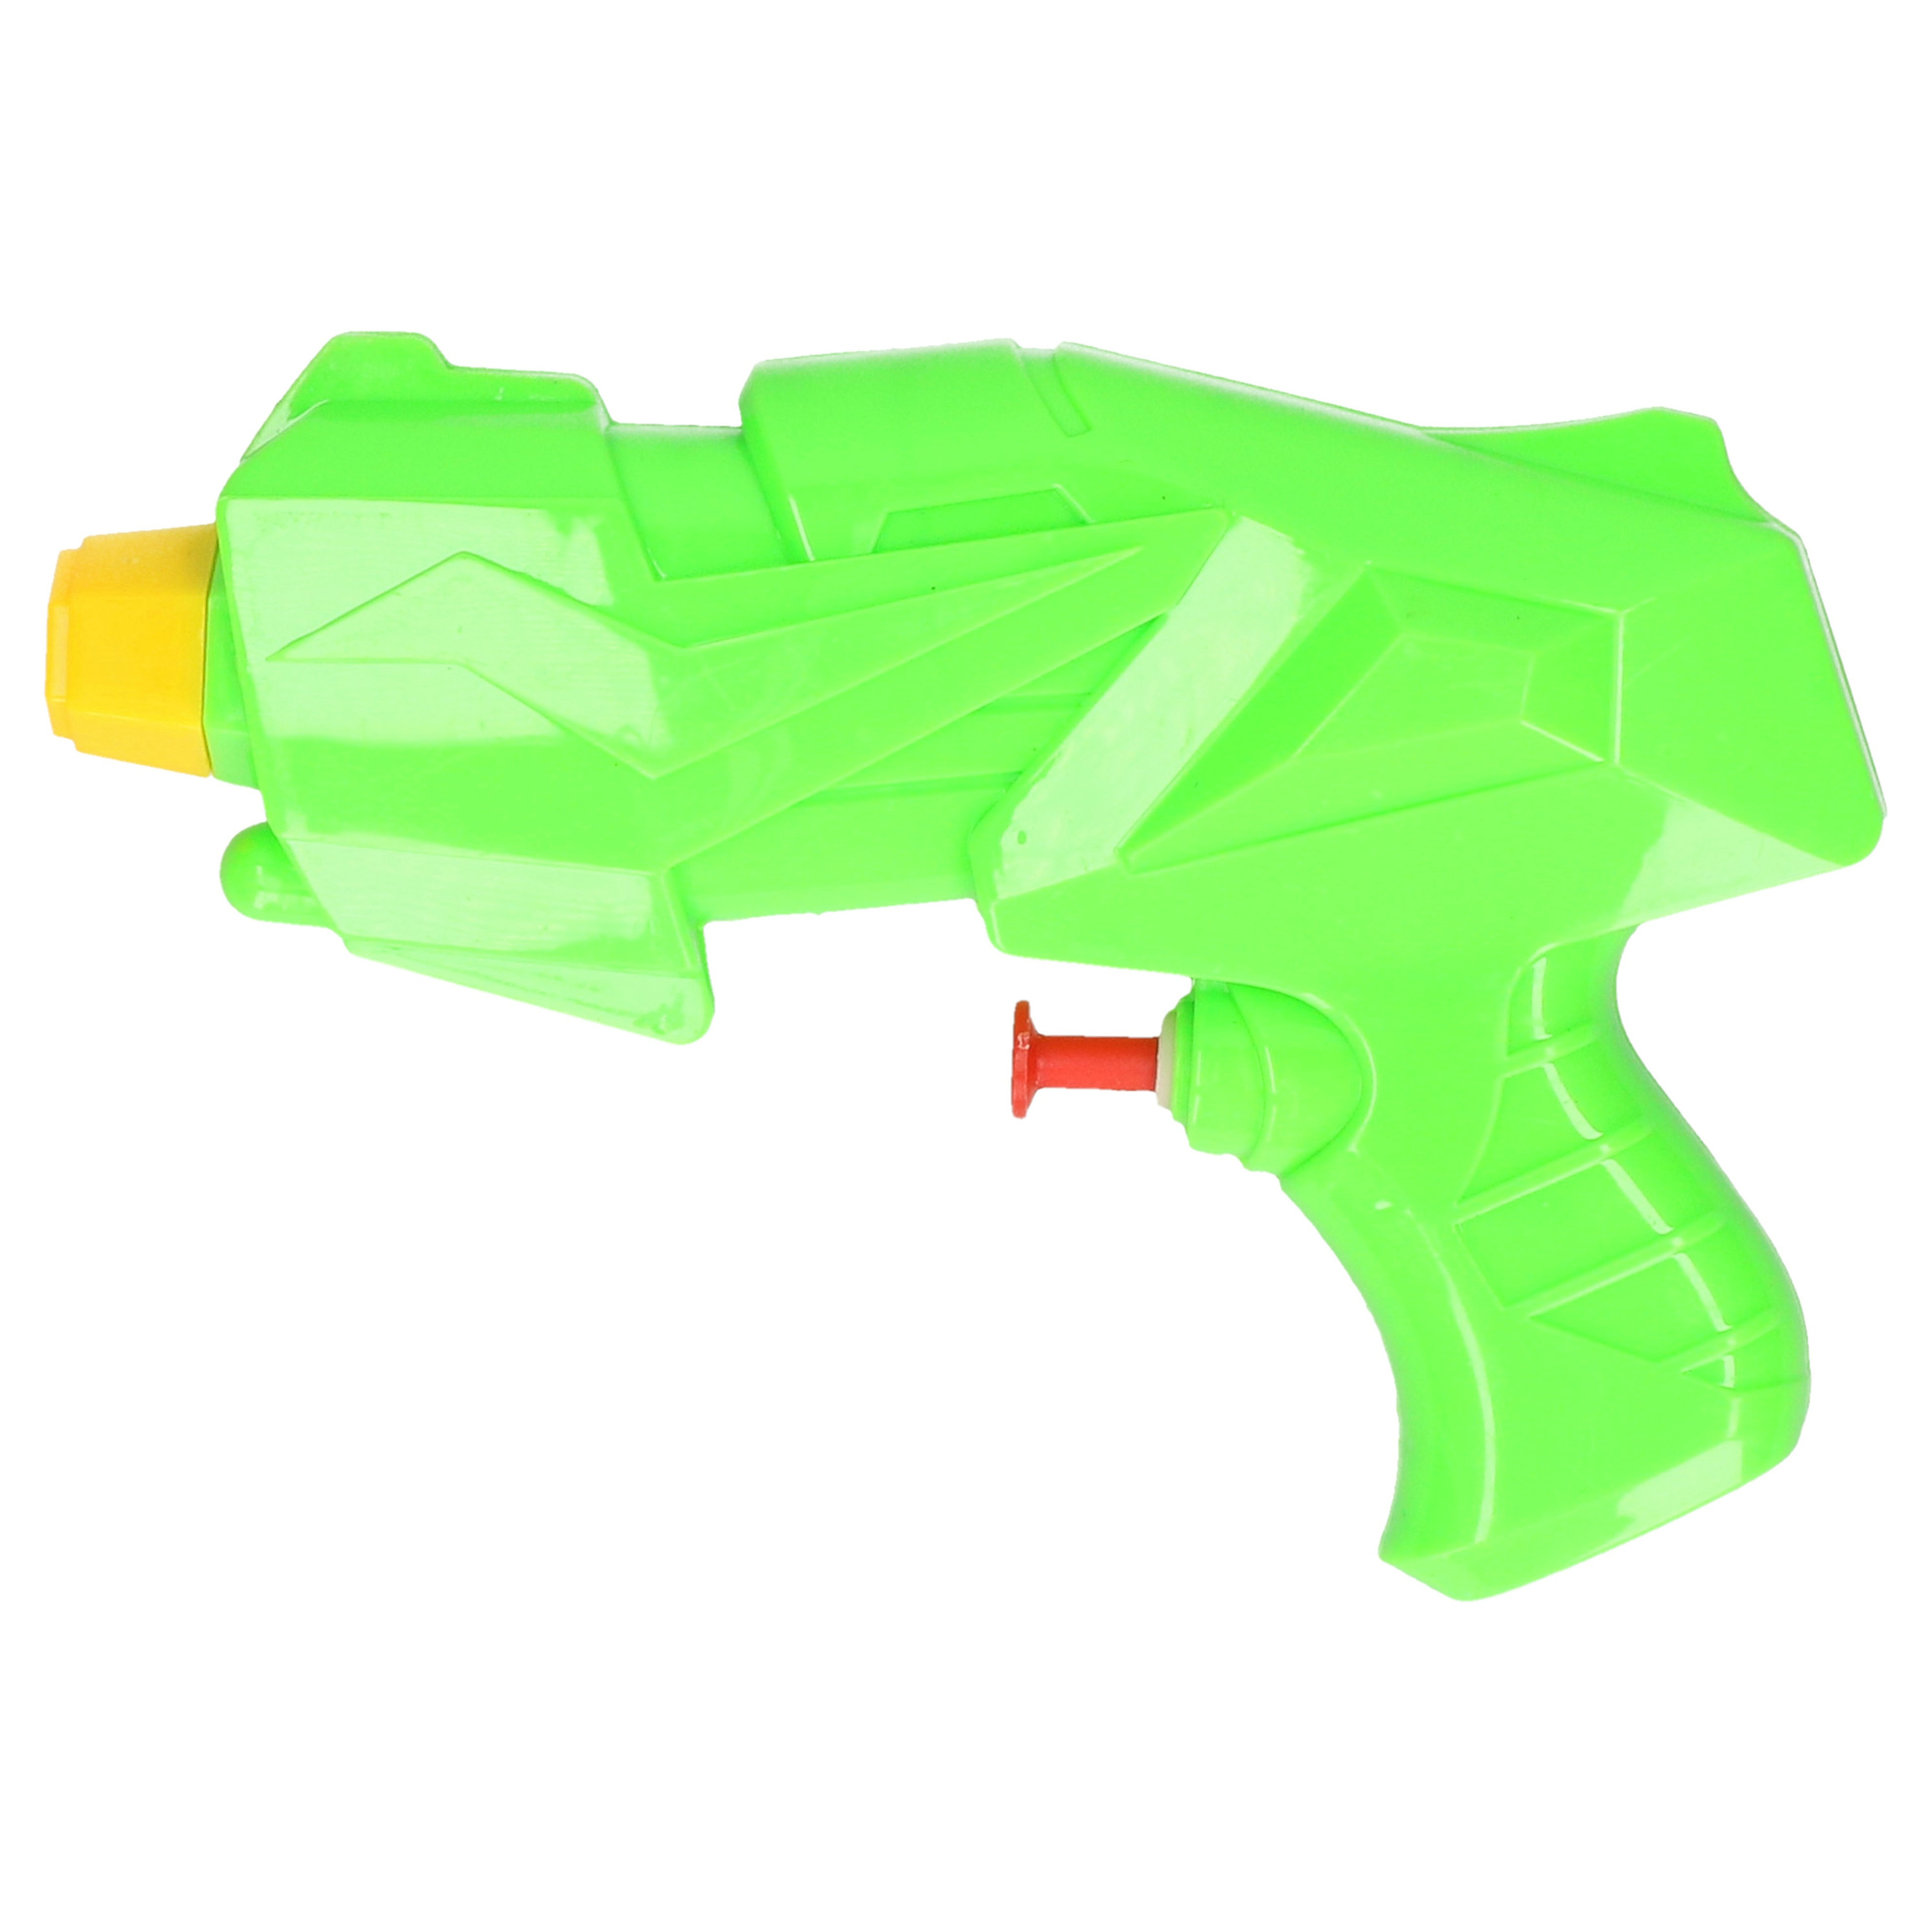 1x Klein kinderspeelgoed waterpistooltjes-waterpistolen 15 cm groen